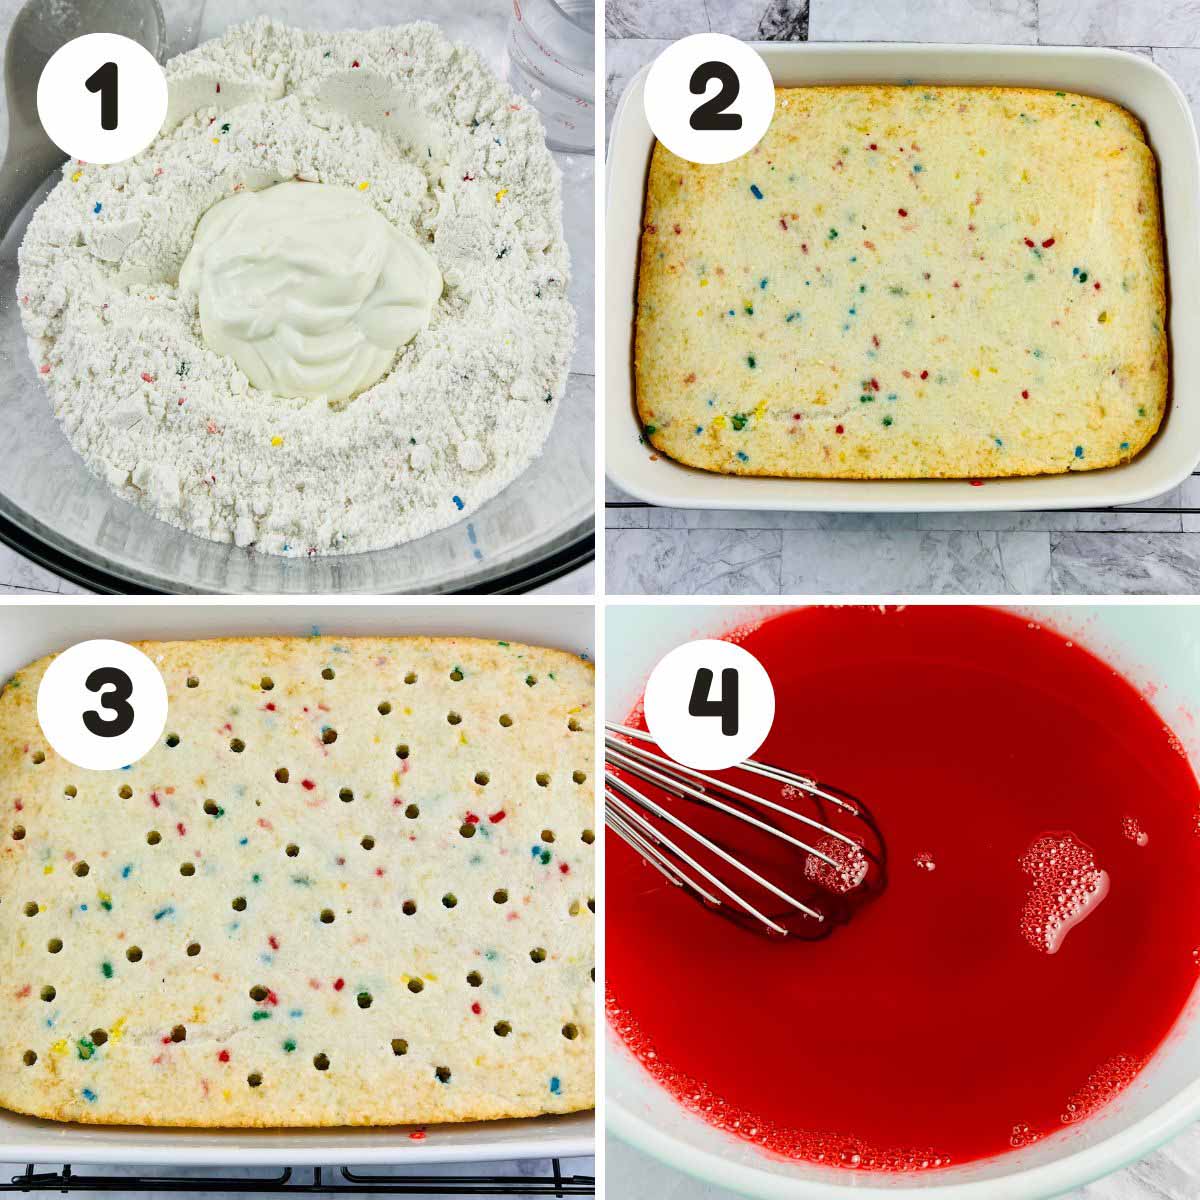 Steps to make the poke cake.